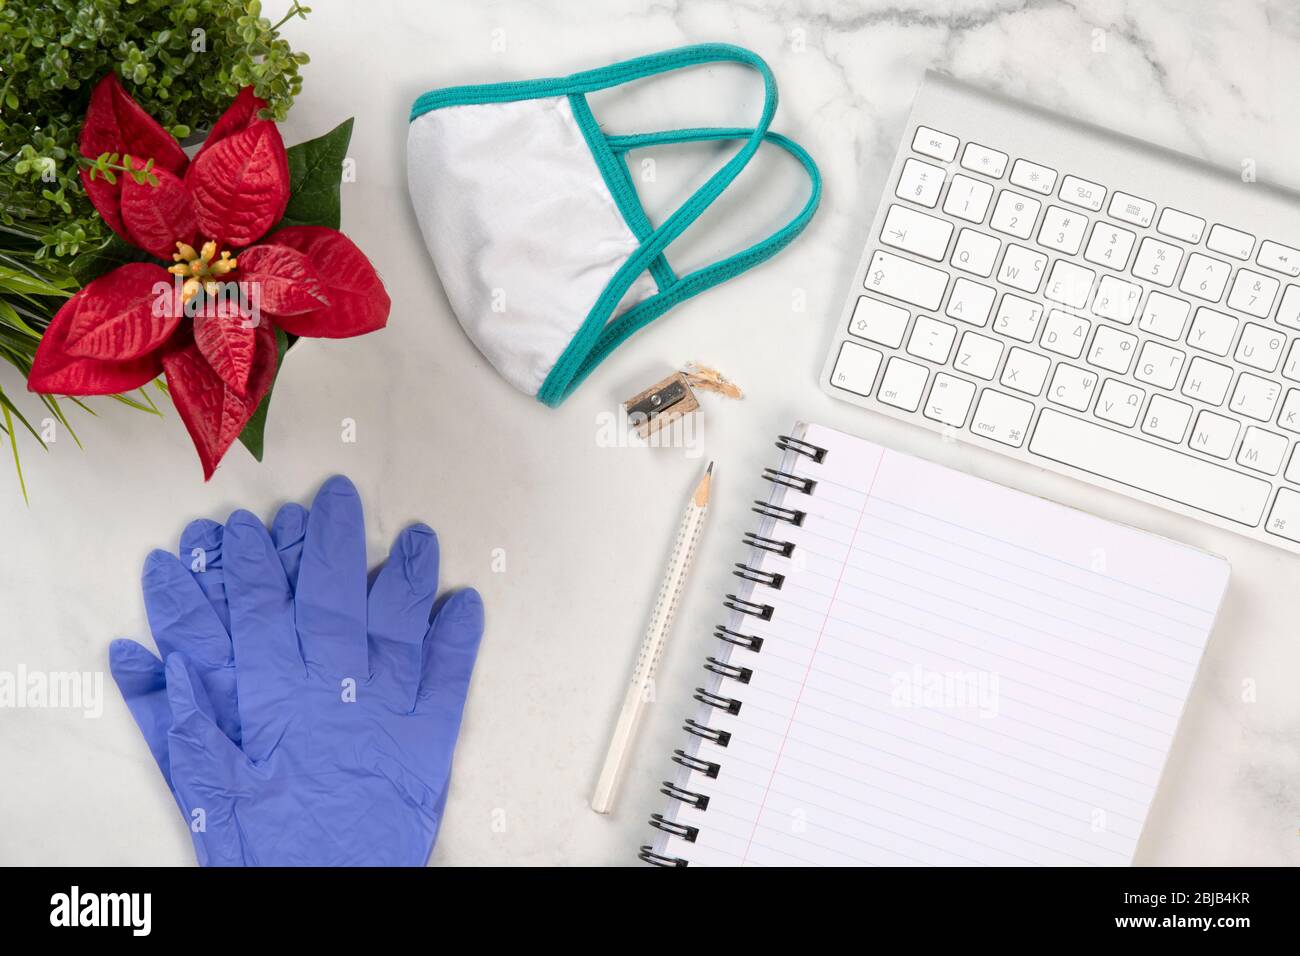 Ärzte Schreibtisch mit Schutzmaske und Handschuhen gegen das Corona-Virus, ein Notizbuch, einen Bleistift, eine rote Blume und eine Tastatur auf einem Schreibtisch mit Marmorstruktur Stockfoto